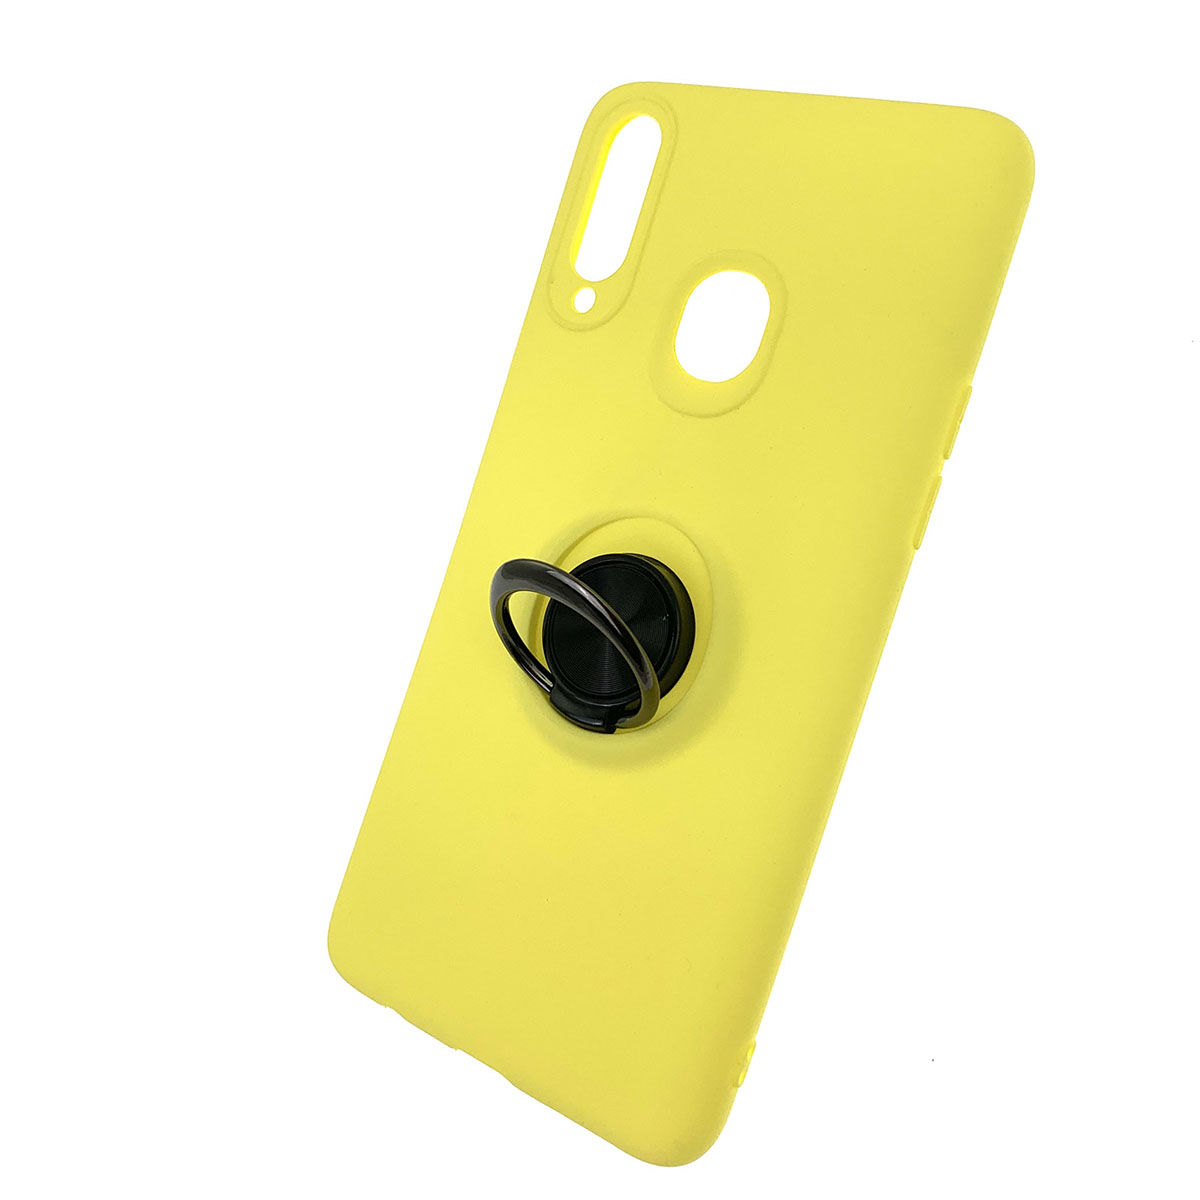 Чехол накладка для SAMSUNG Galaxy A20s (SM-A207), силикон, кольцо держатель, спиннер, цвет желтый.